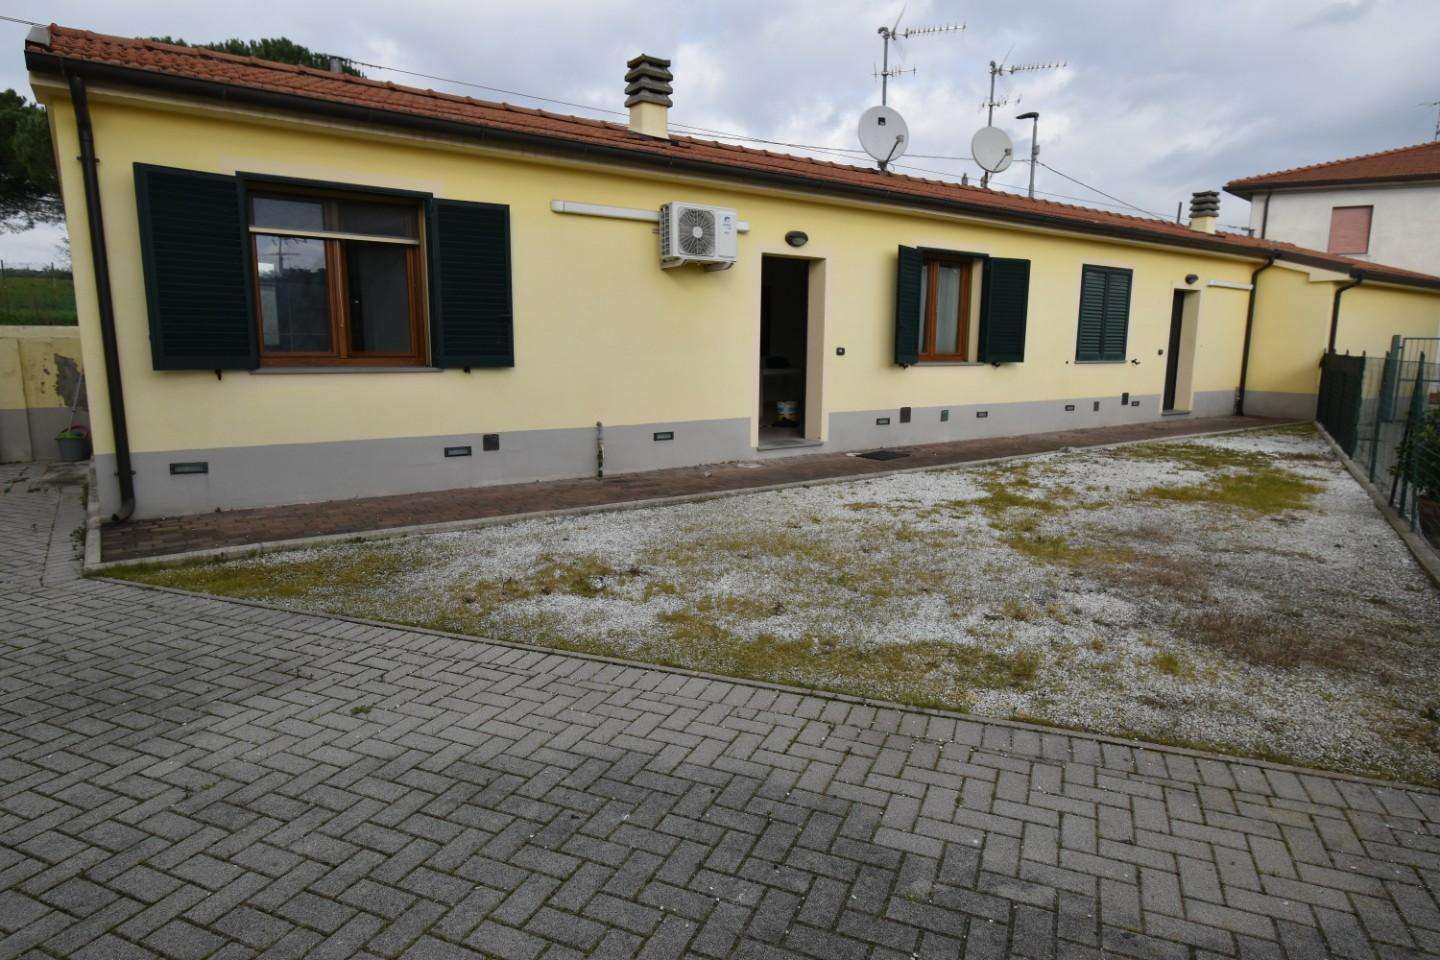 Palazzo - Stabile in Vendita a San Giuliano Terme Via Vecchializia, 29